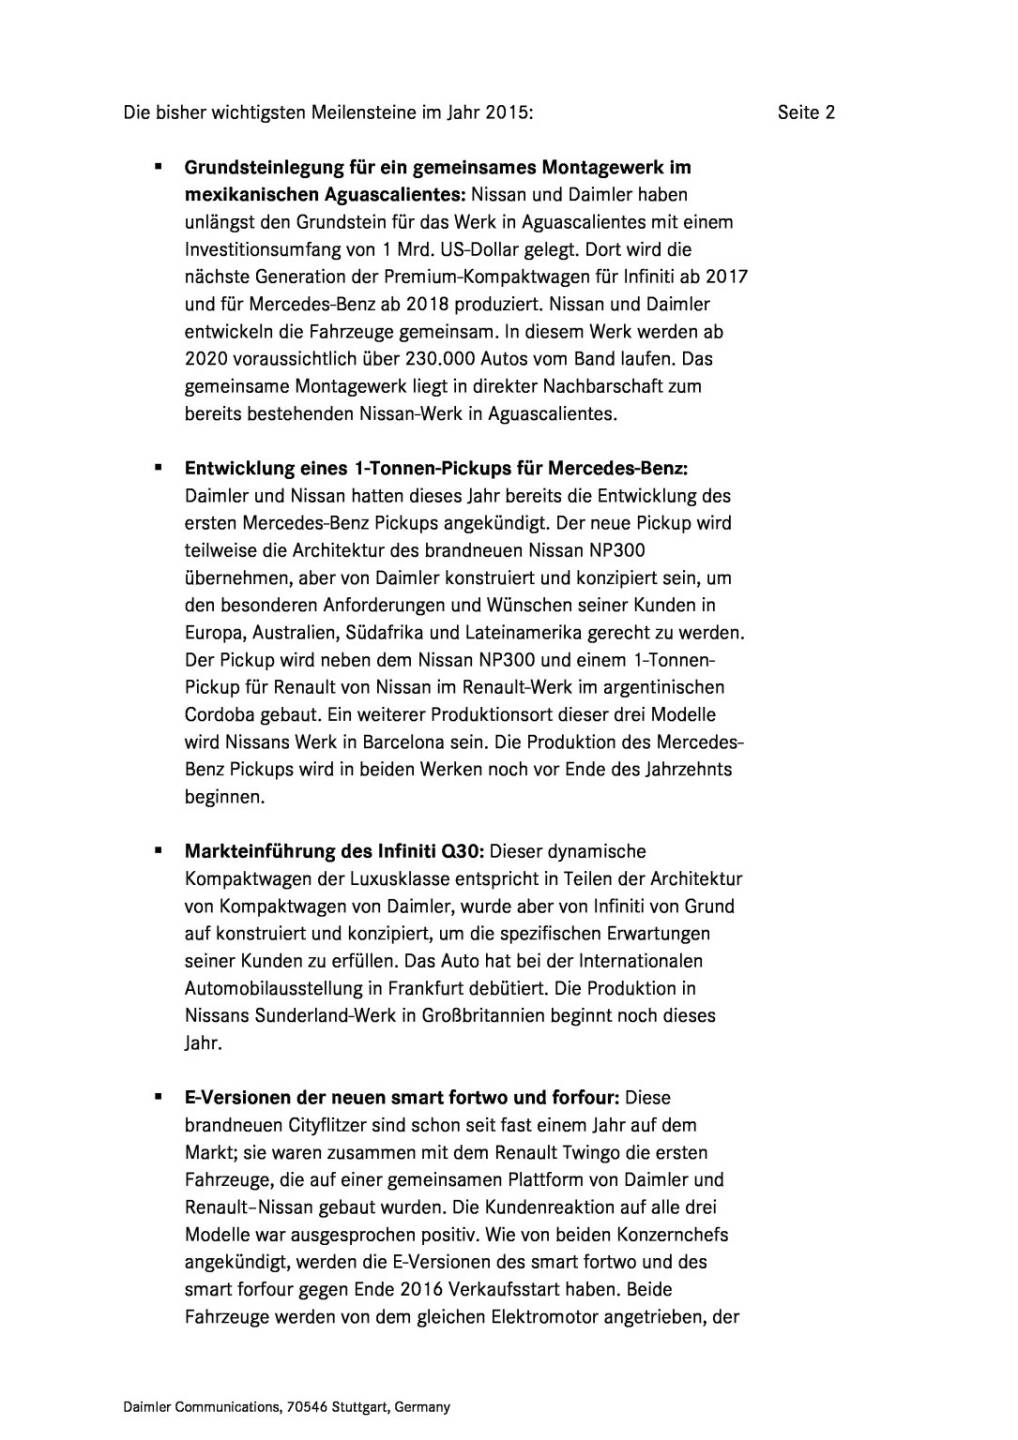 Kooperation von Daimler und Renault-Nissan Allianz im Jahr 2015, Seite 2/4, komplettes Dokument unter http://boerse-social.com/static/uploads/file_368_kooperation_von_daimler_und_renault-nissan_allianz_im_jahr_2015.pdf